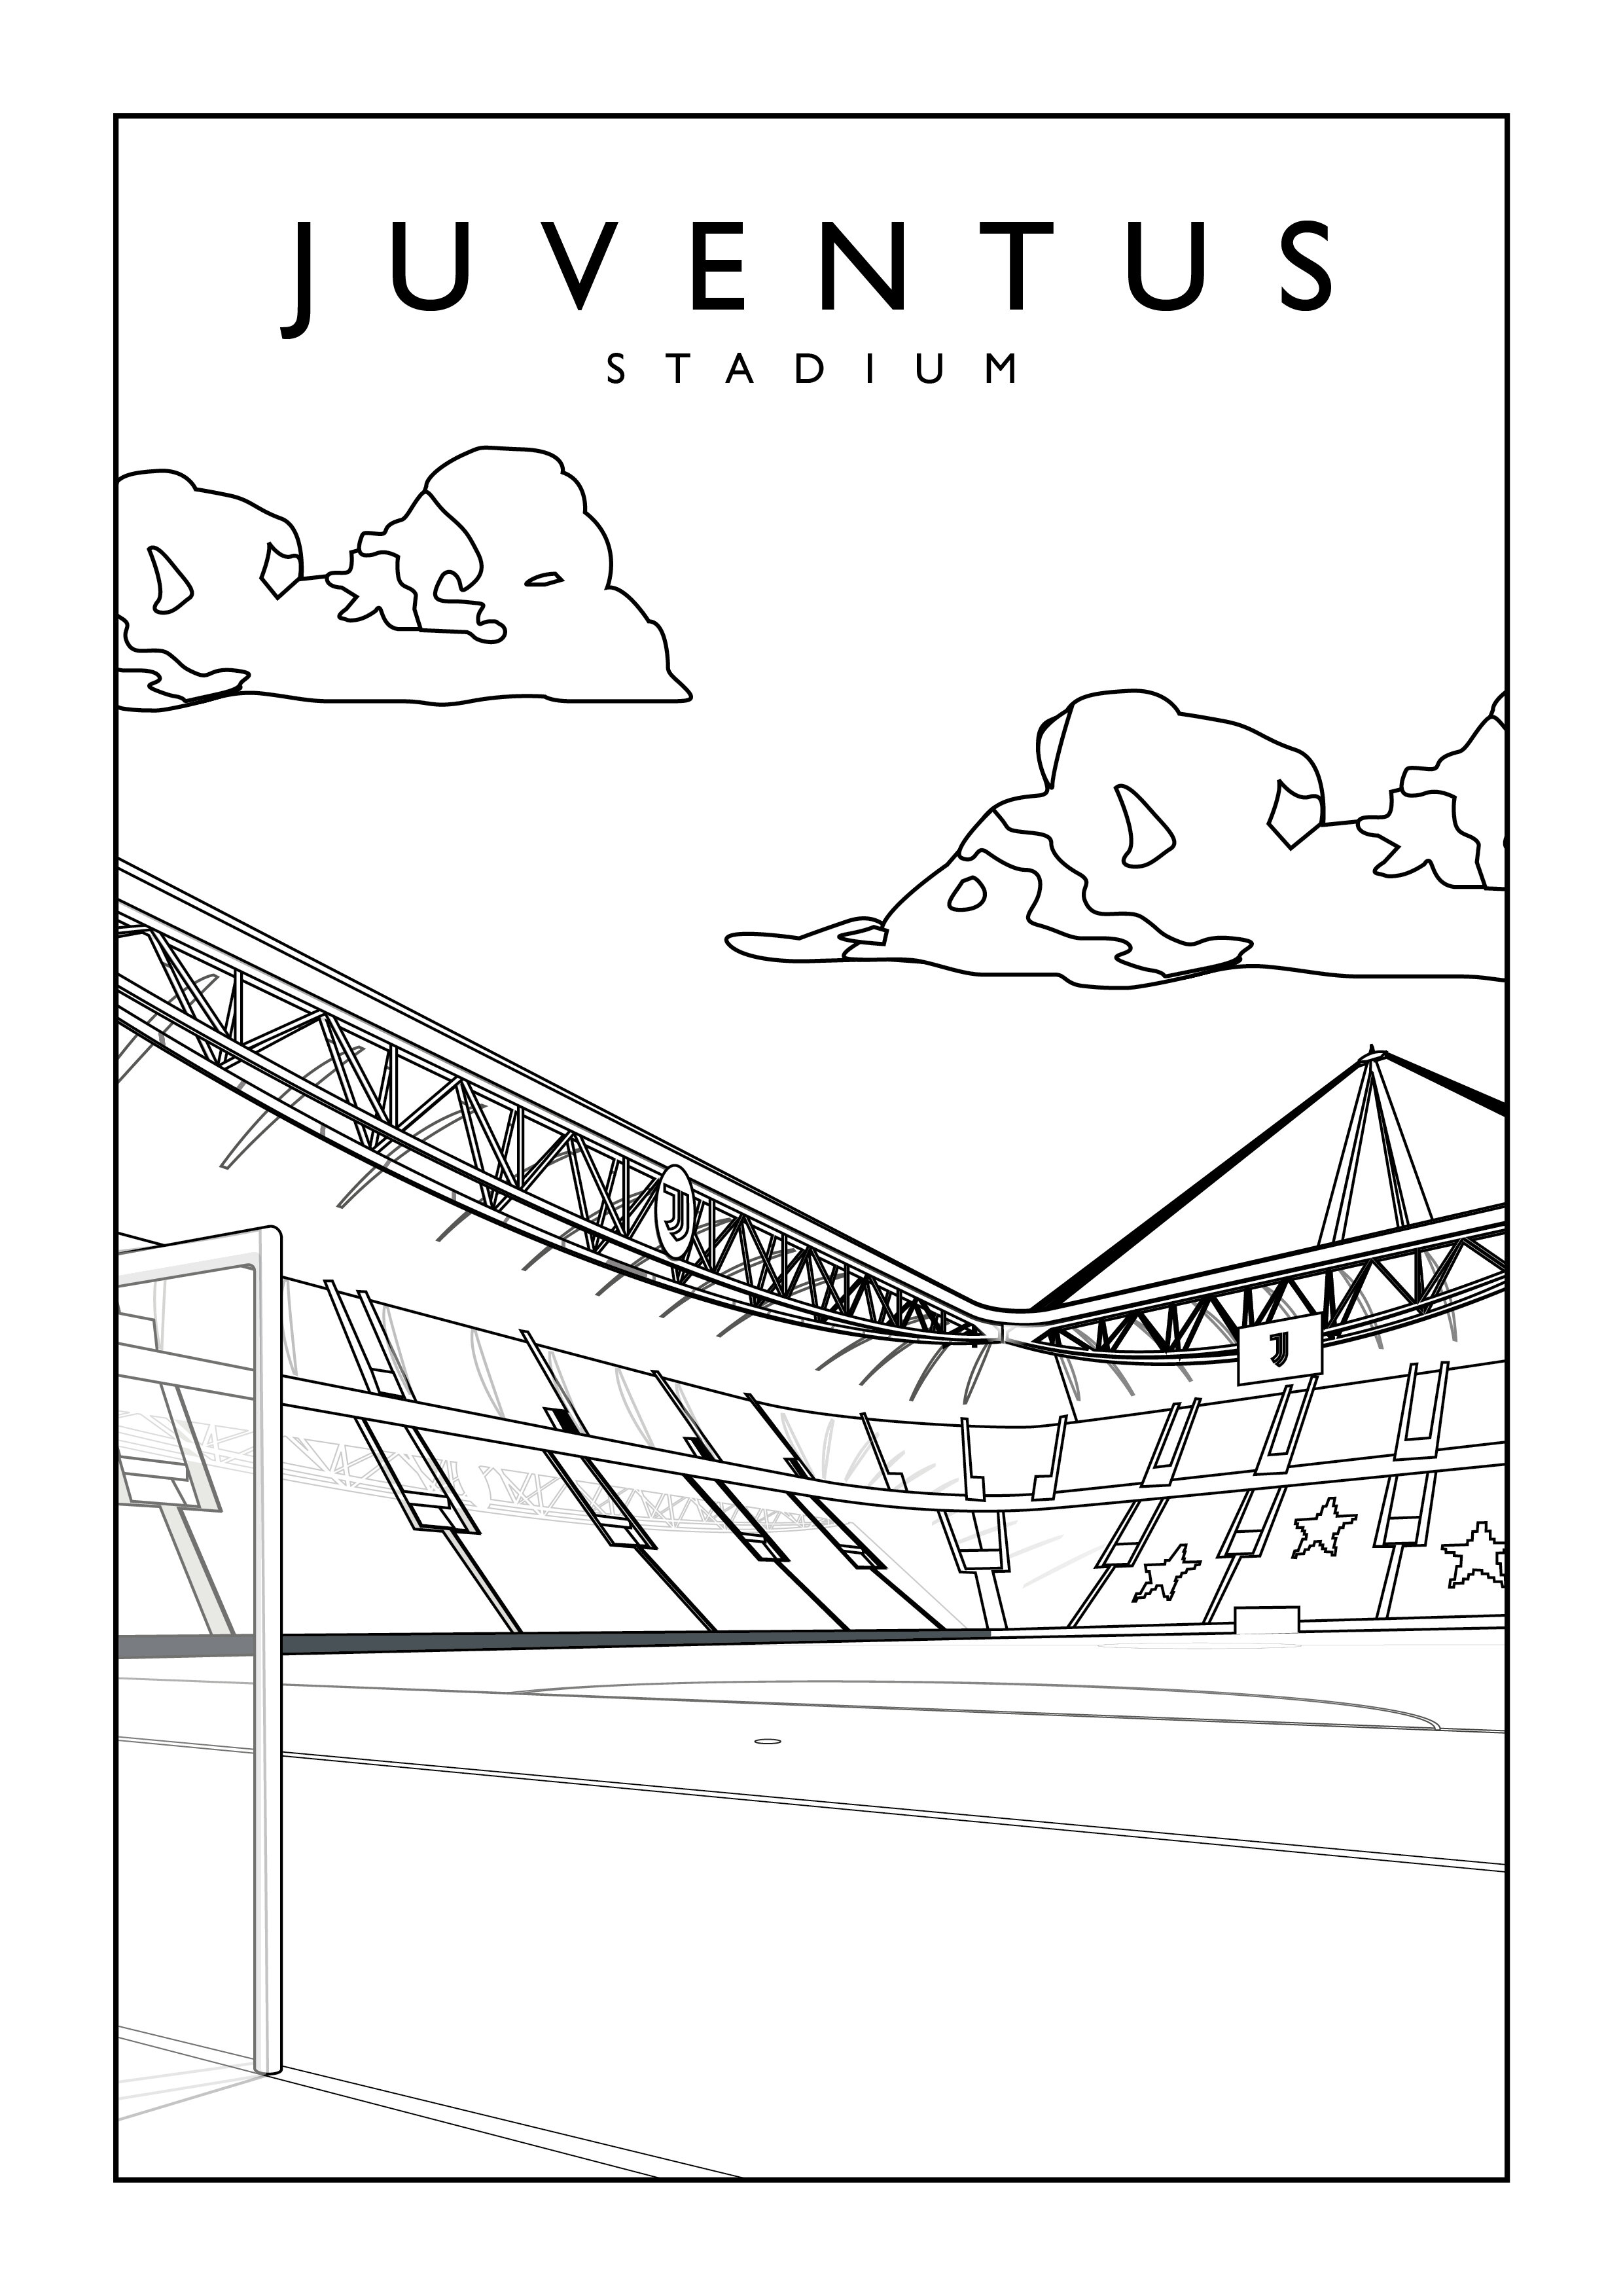 juventus stadium coloring pages